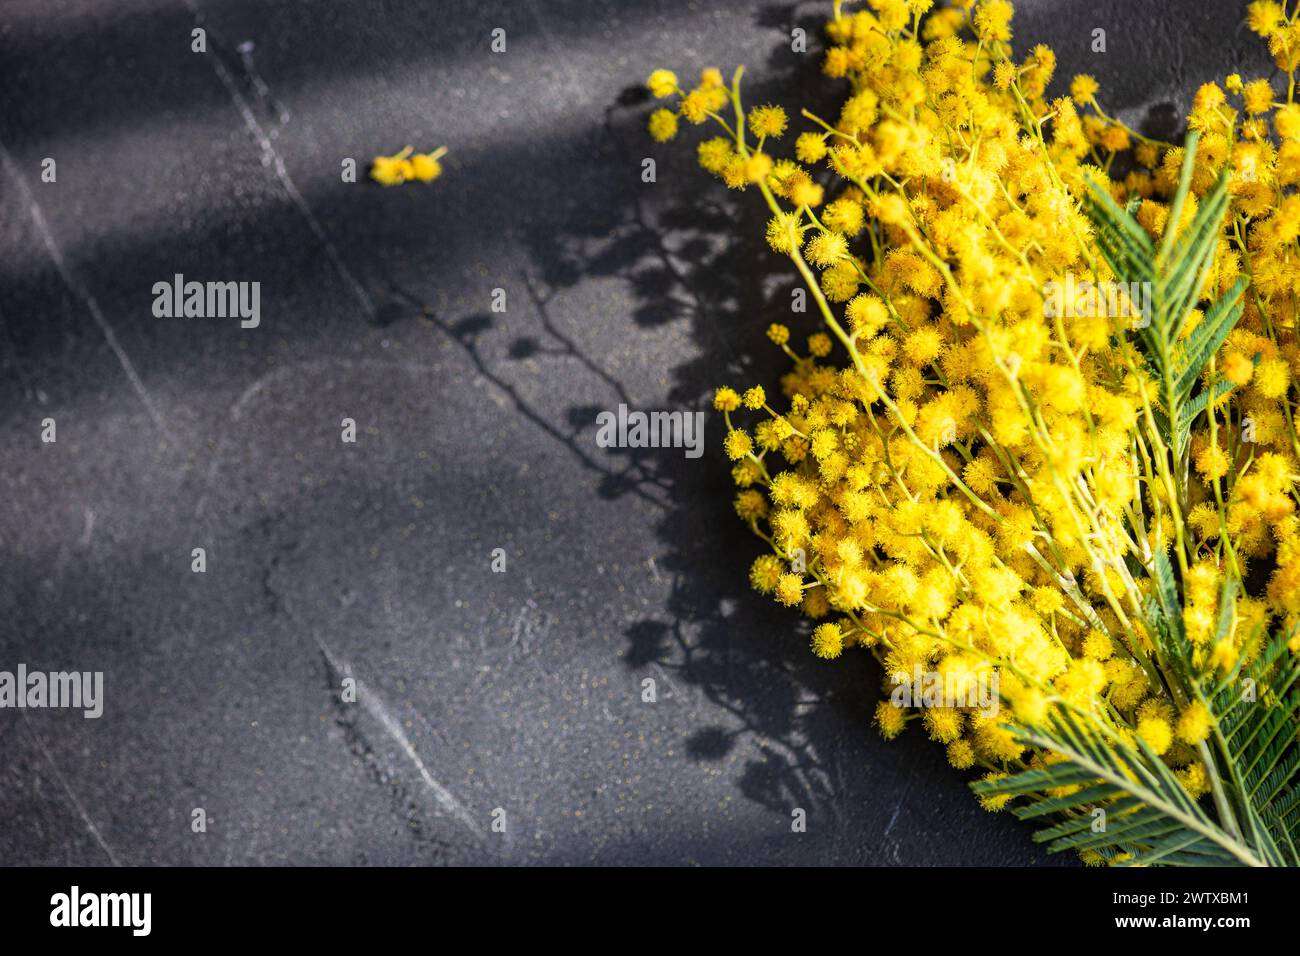 Vue aérienne d'un tas de tiges de mimosa jaune fraîchement cueillies sur une table Banque D'Images